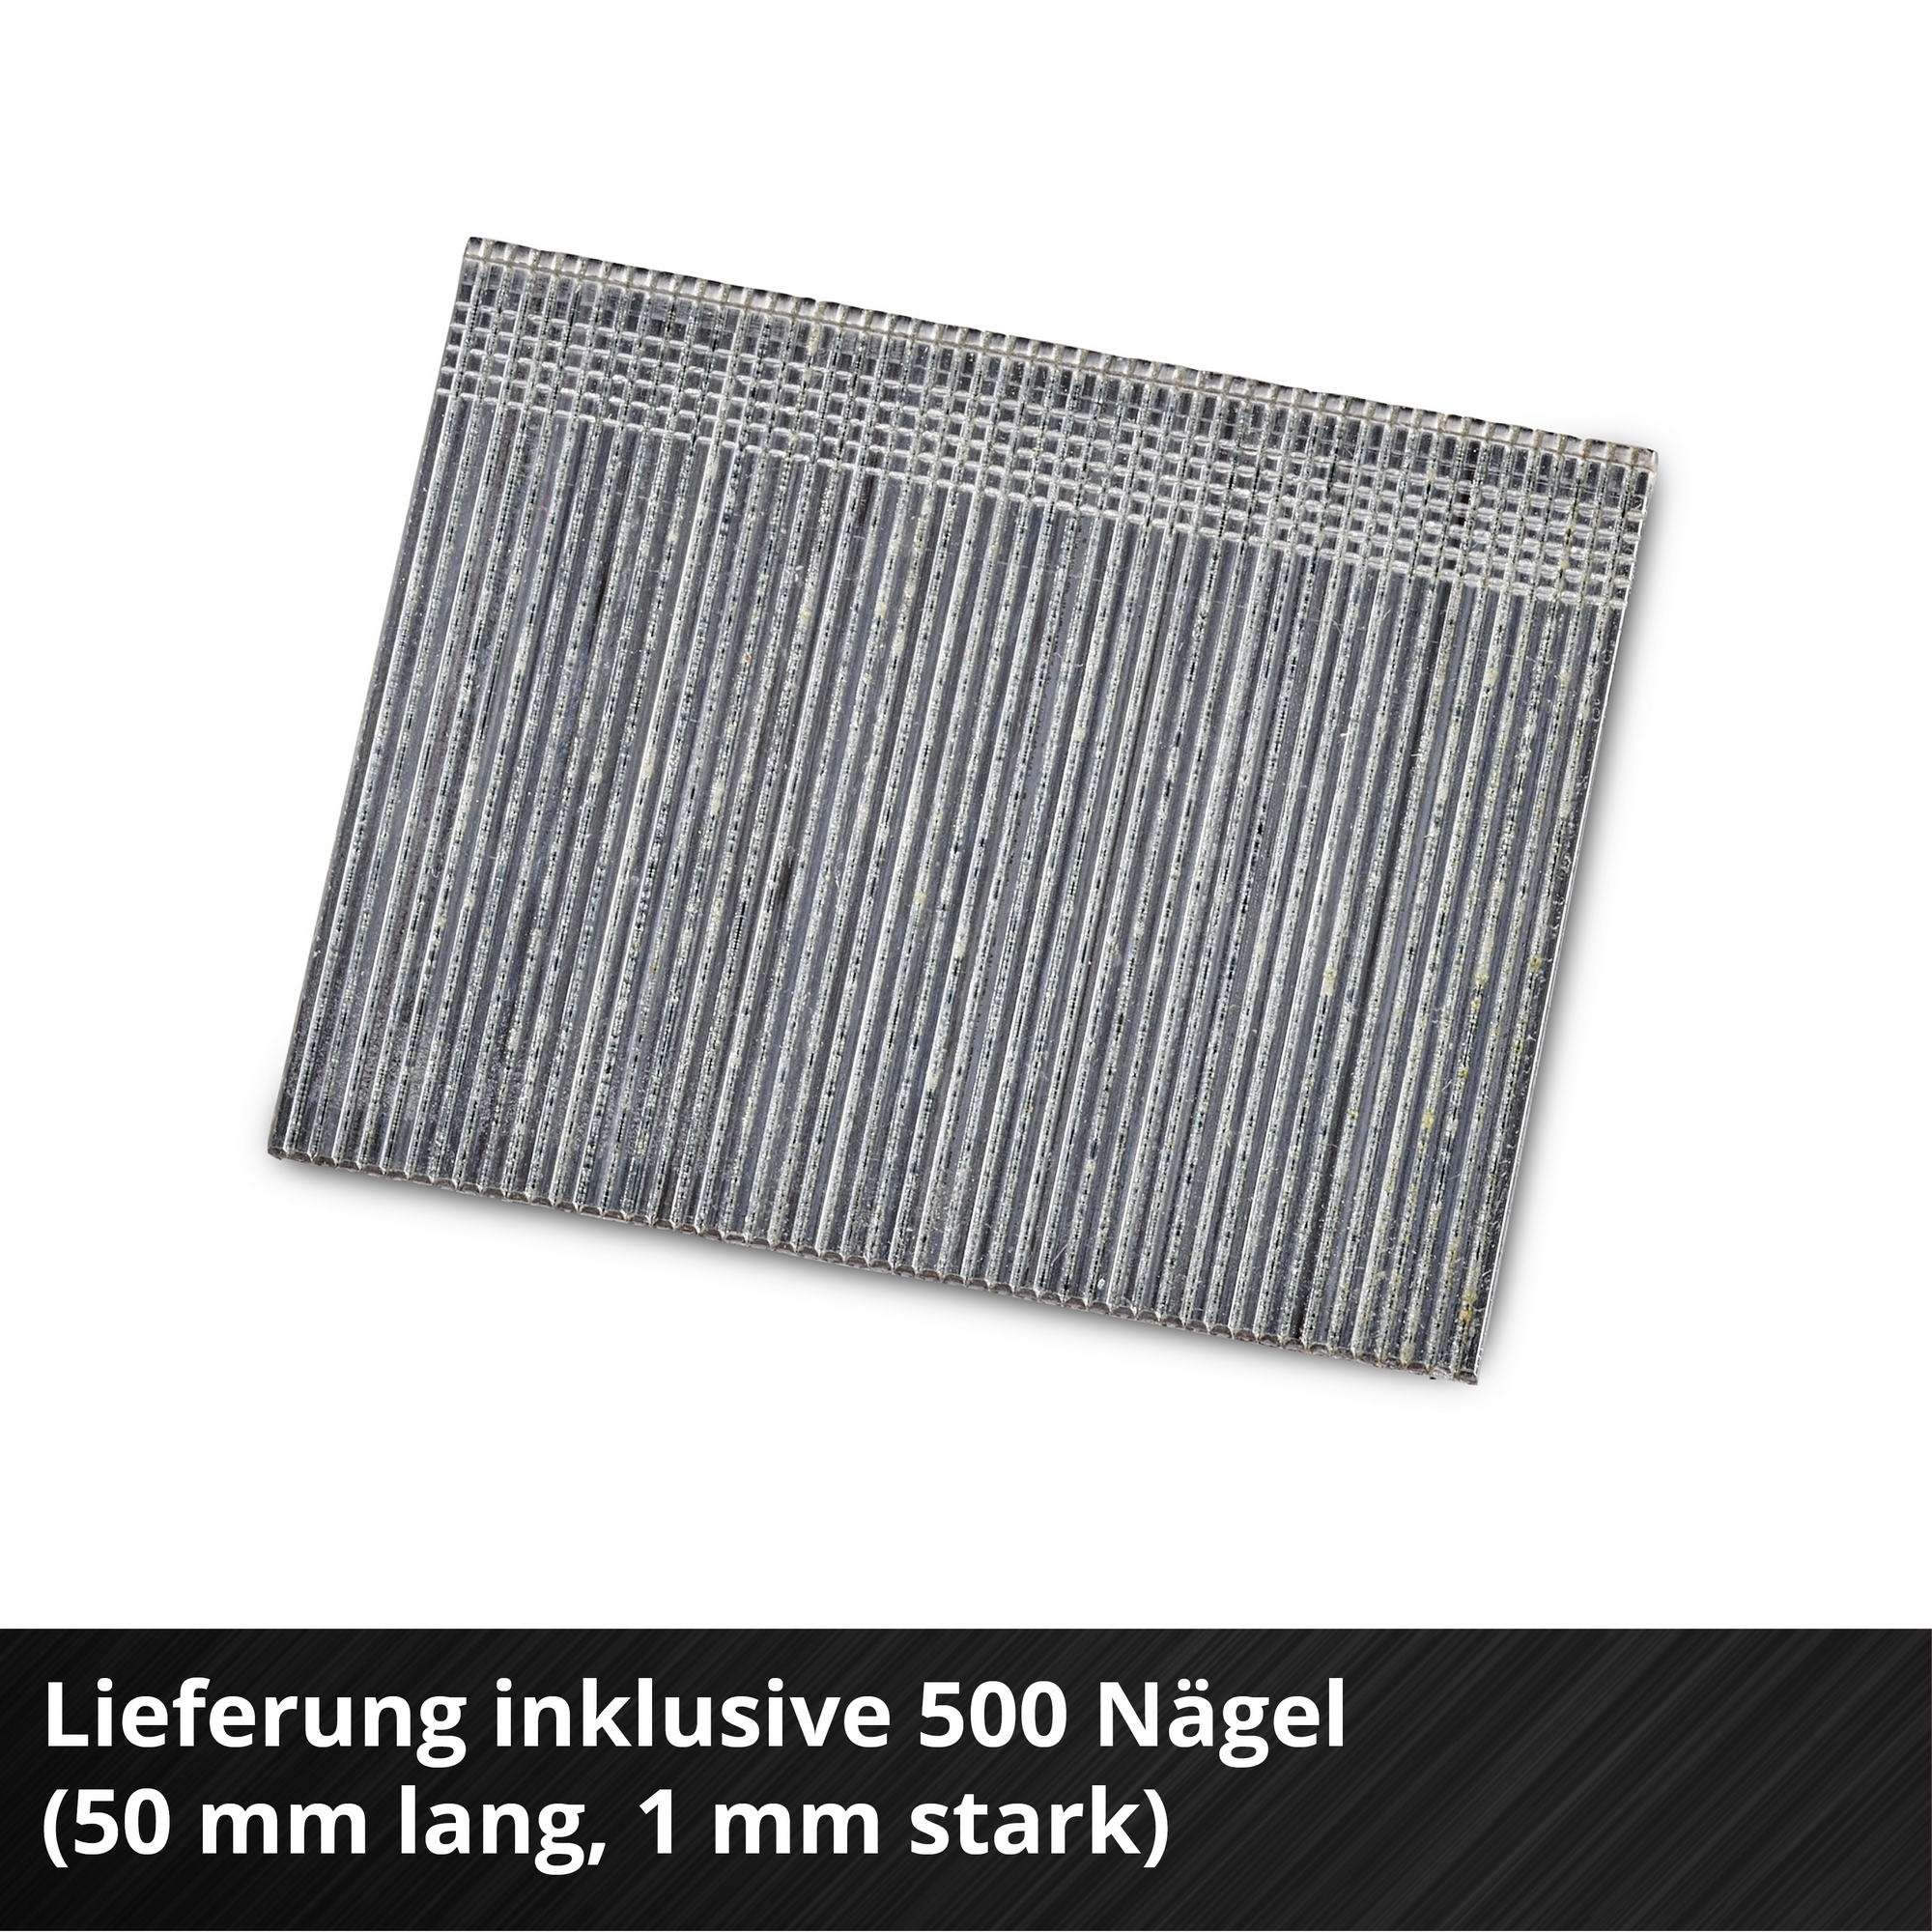 Akku-Nagler 'Fixetto 18/50 N' 18 V inklusive 500 Stück Nägel ohne Akku und Ladegerät + product picture